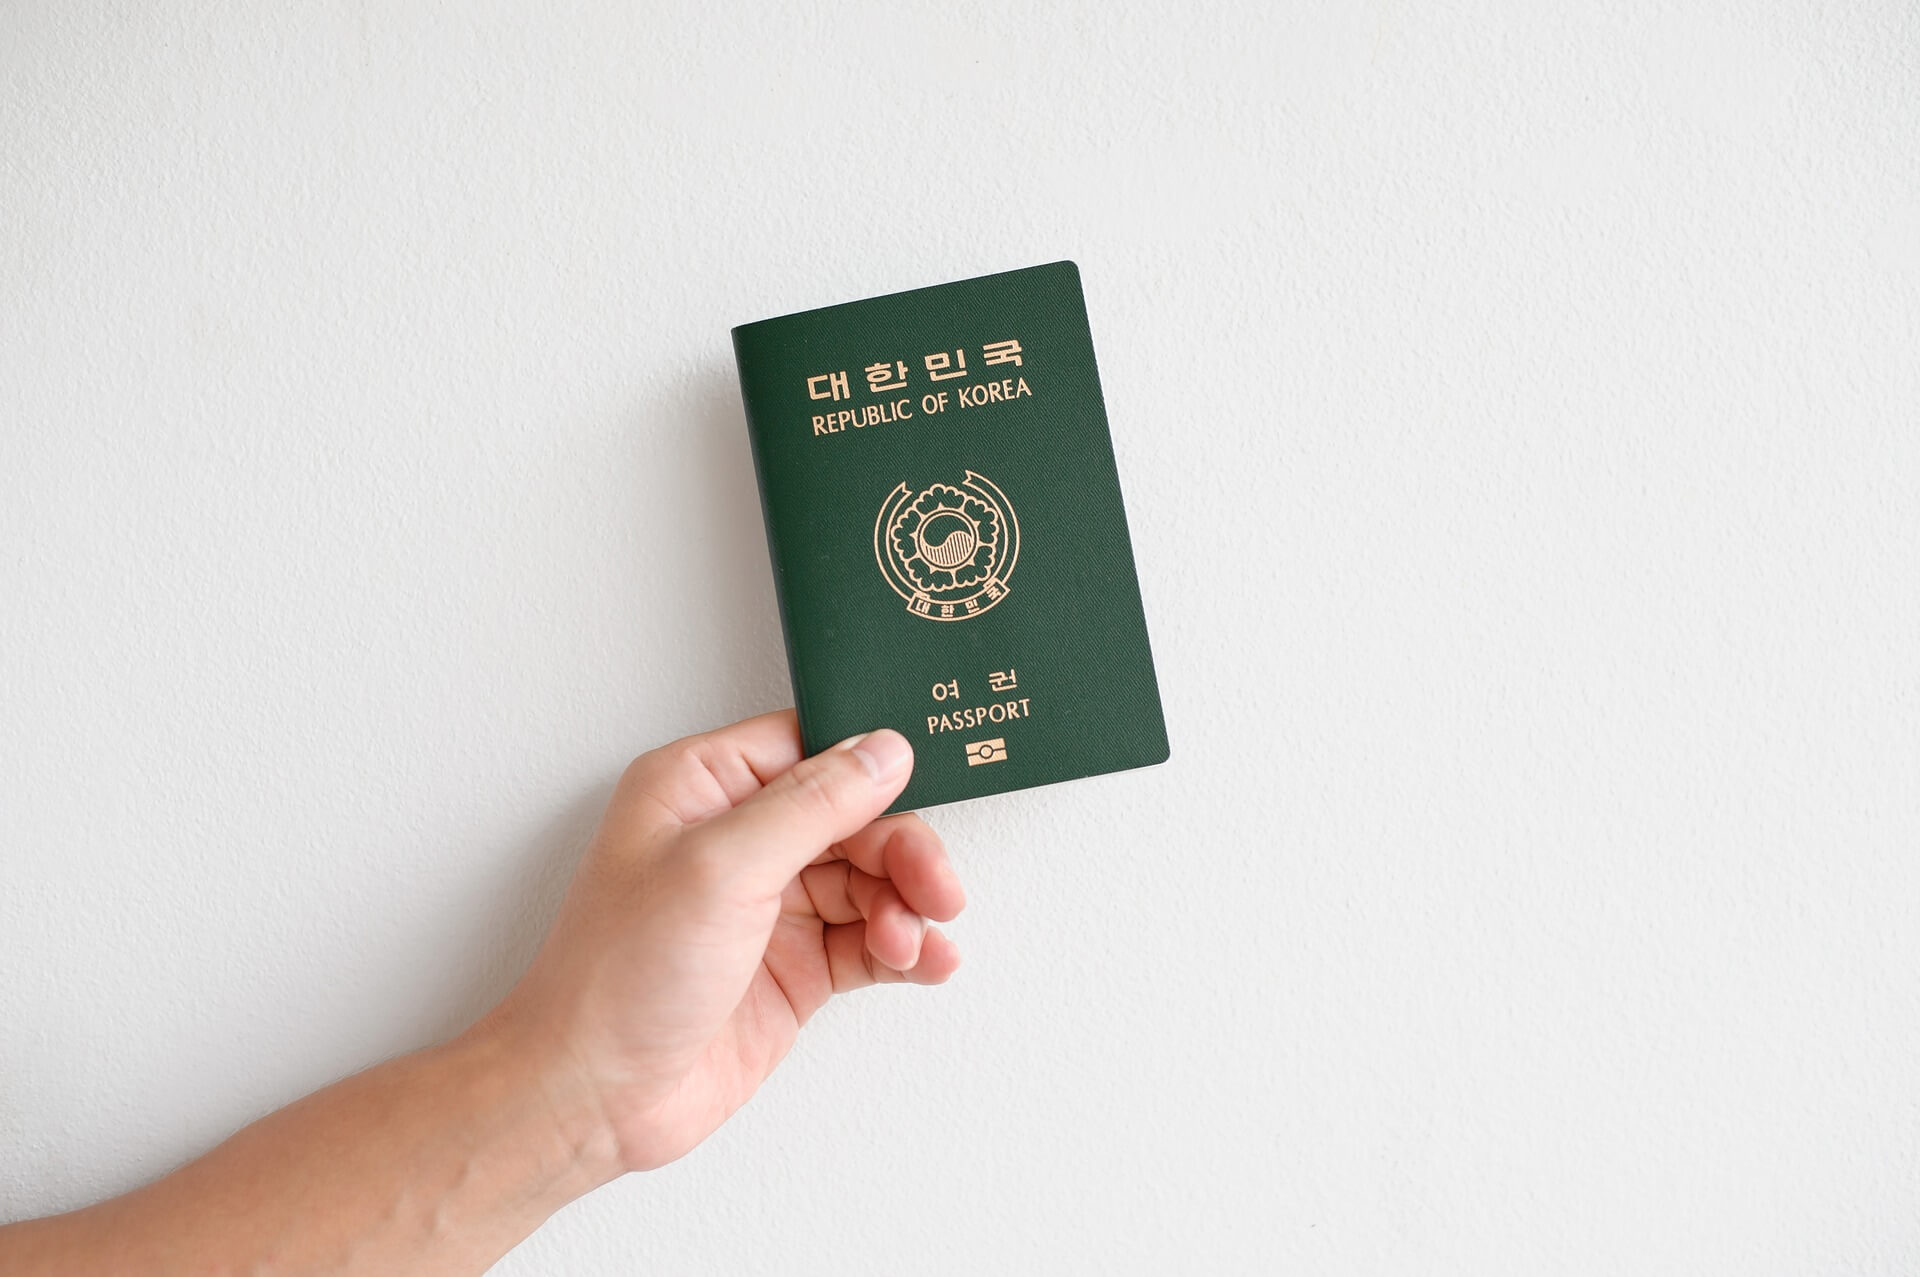 εικόνα κορεατικού διαβατηρίου